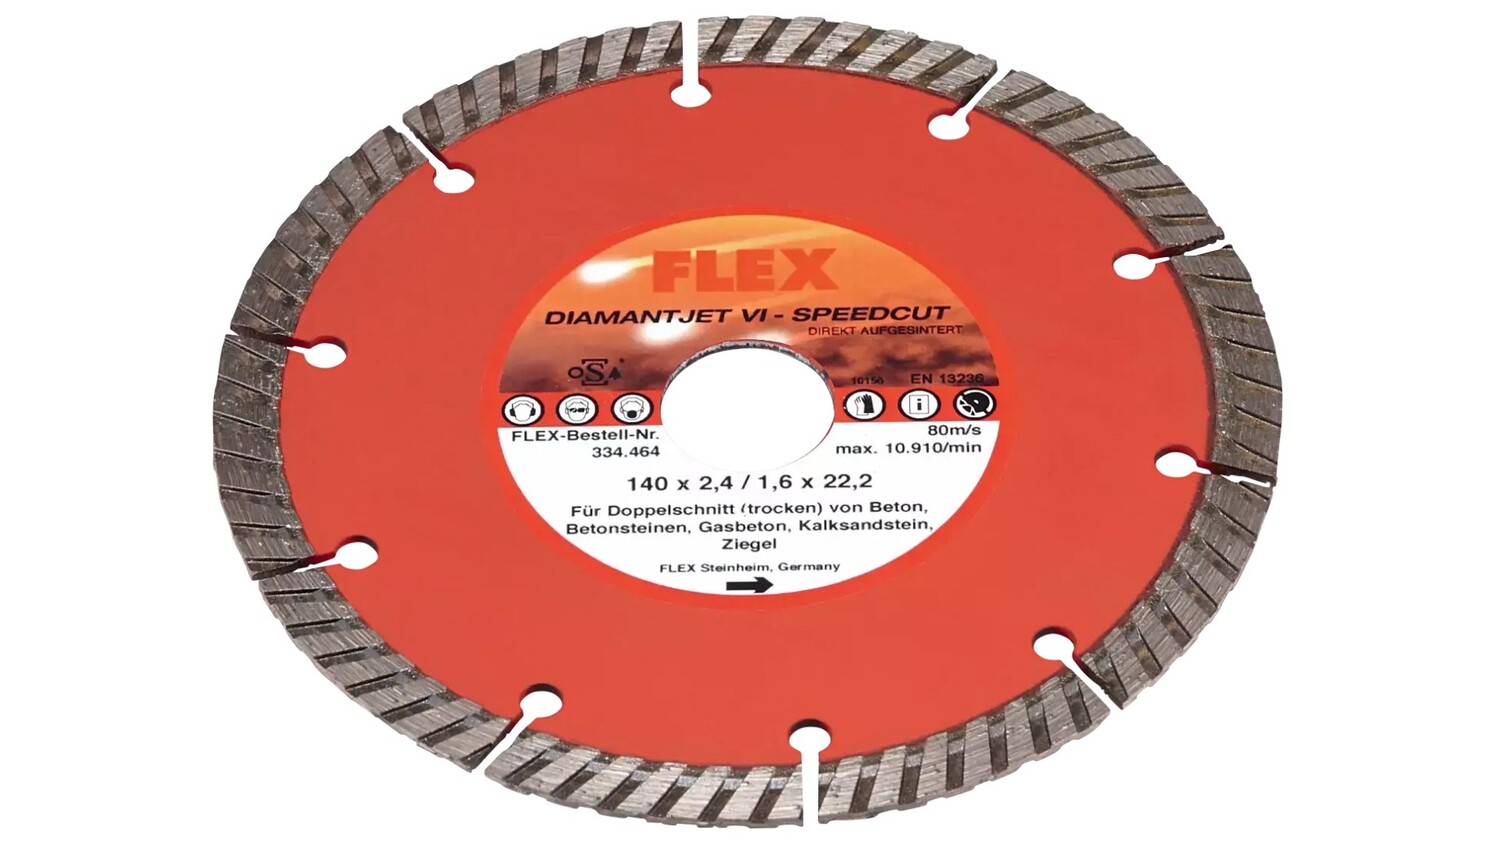 Быстрорежущий алмазный диск Flex Diamantjet VI - Speedcut 334464